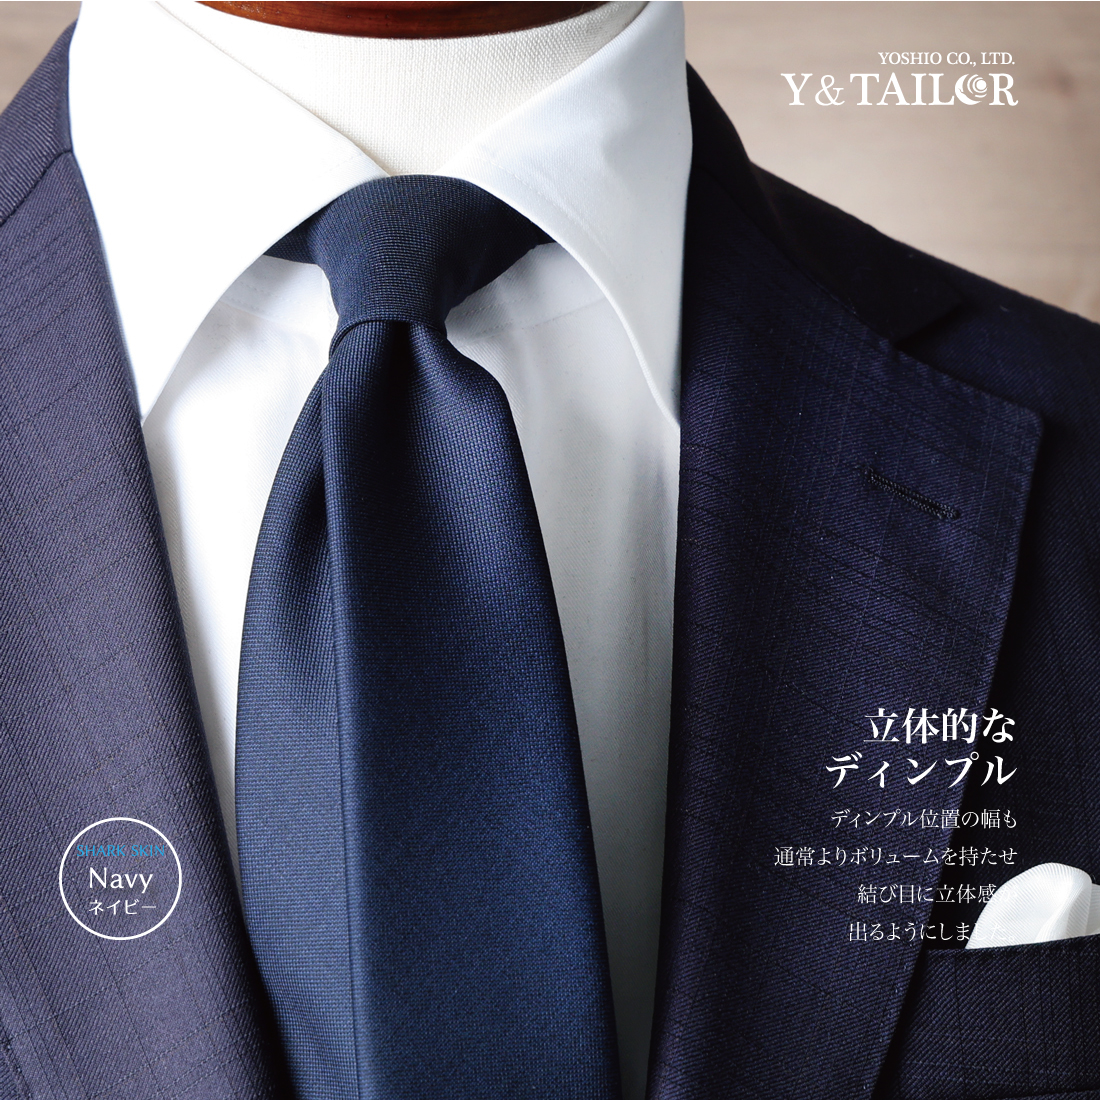  галстук шерсть большой . ширина 6cm серии узкий галстук CANONICOkano Nico высококлассный бренд модный подарок 